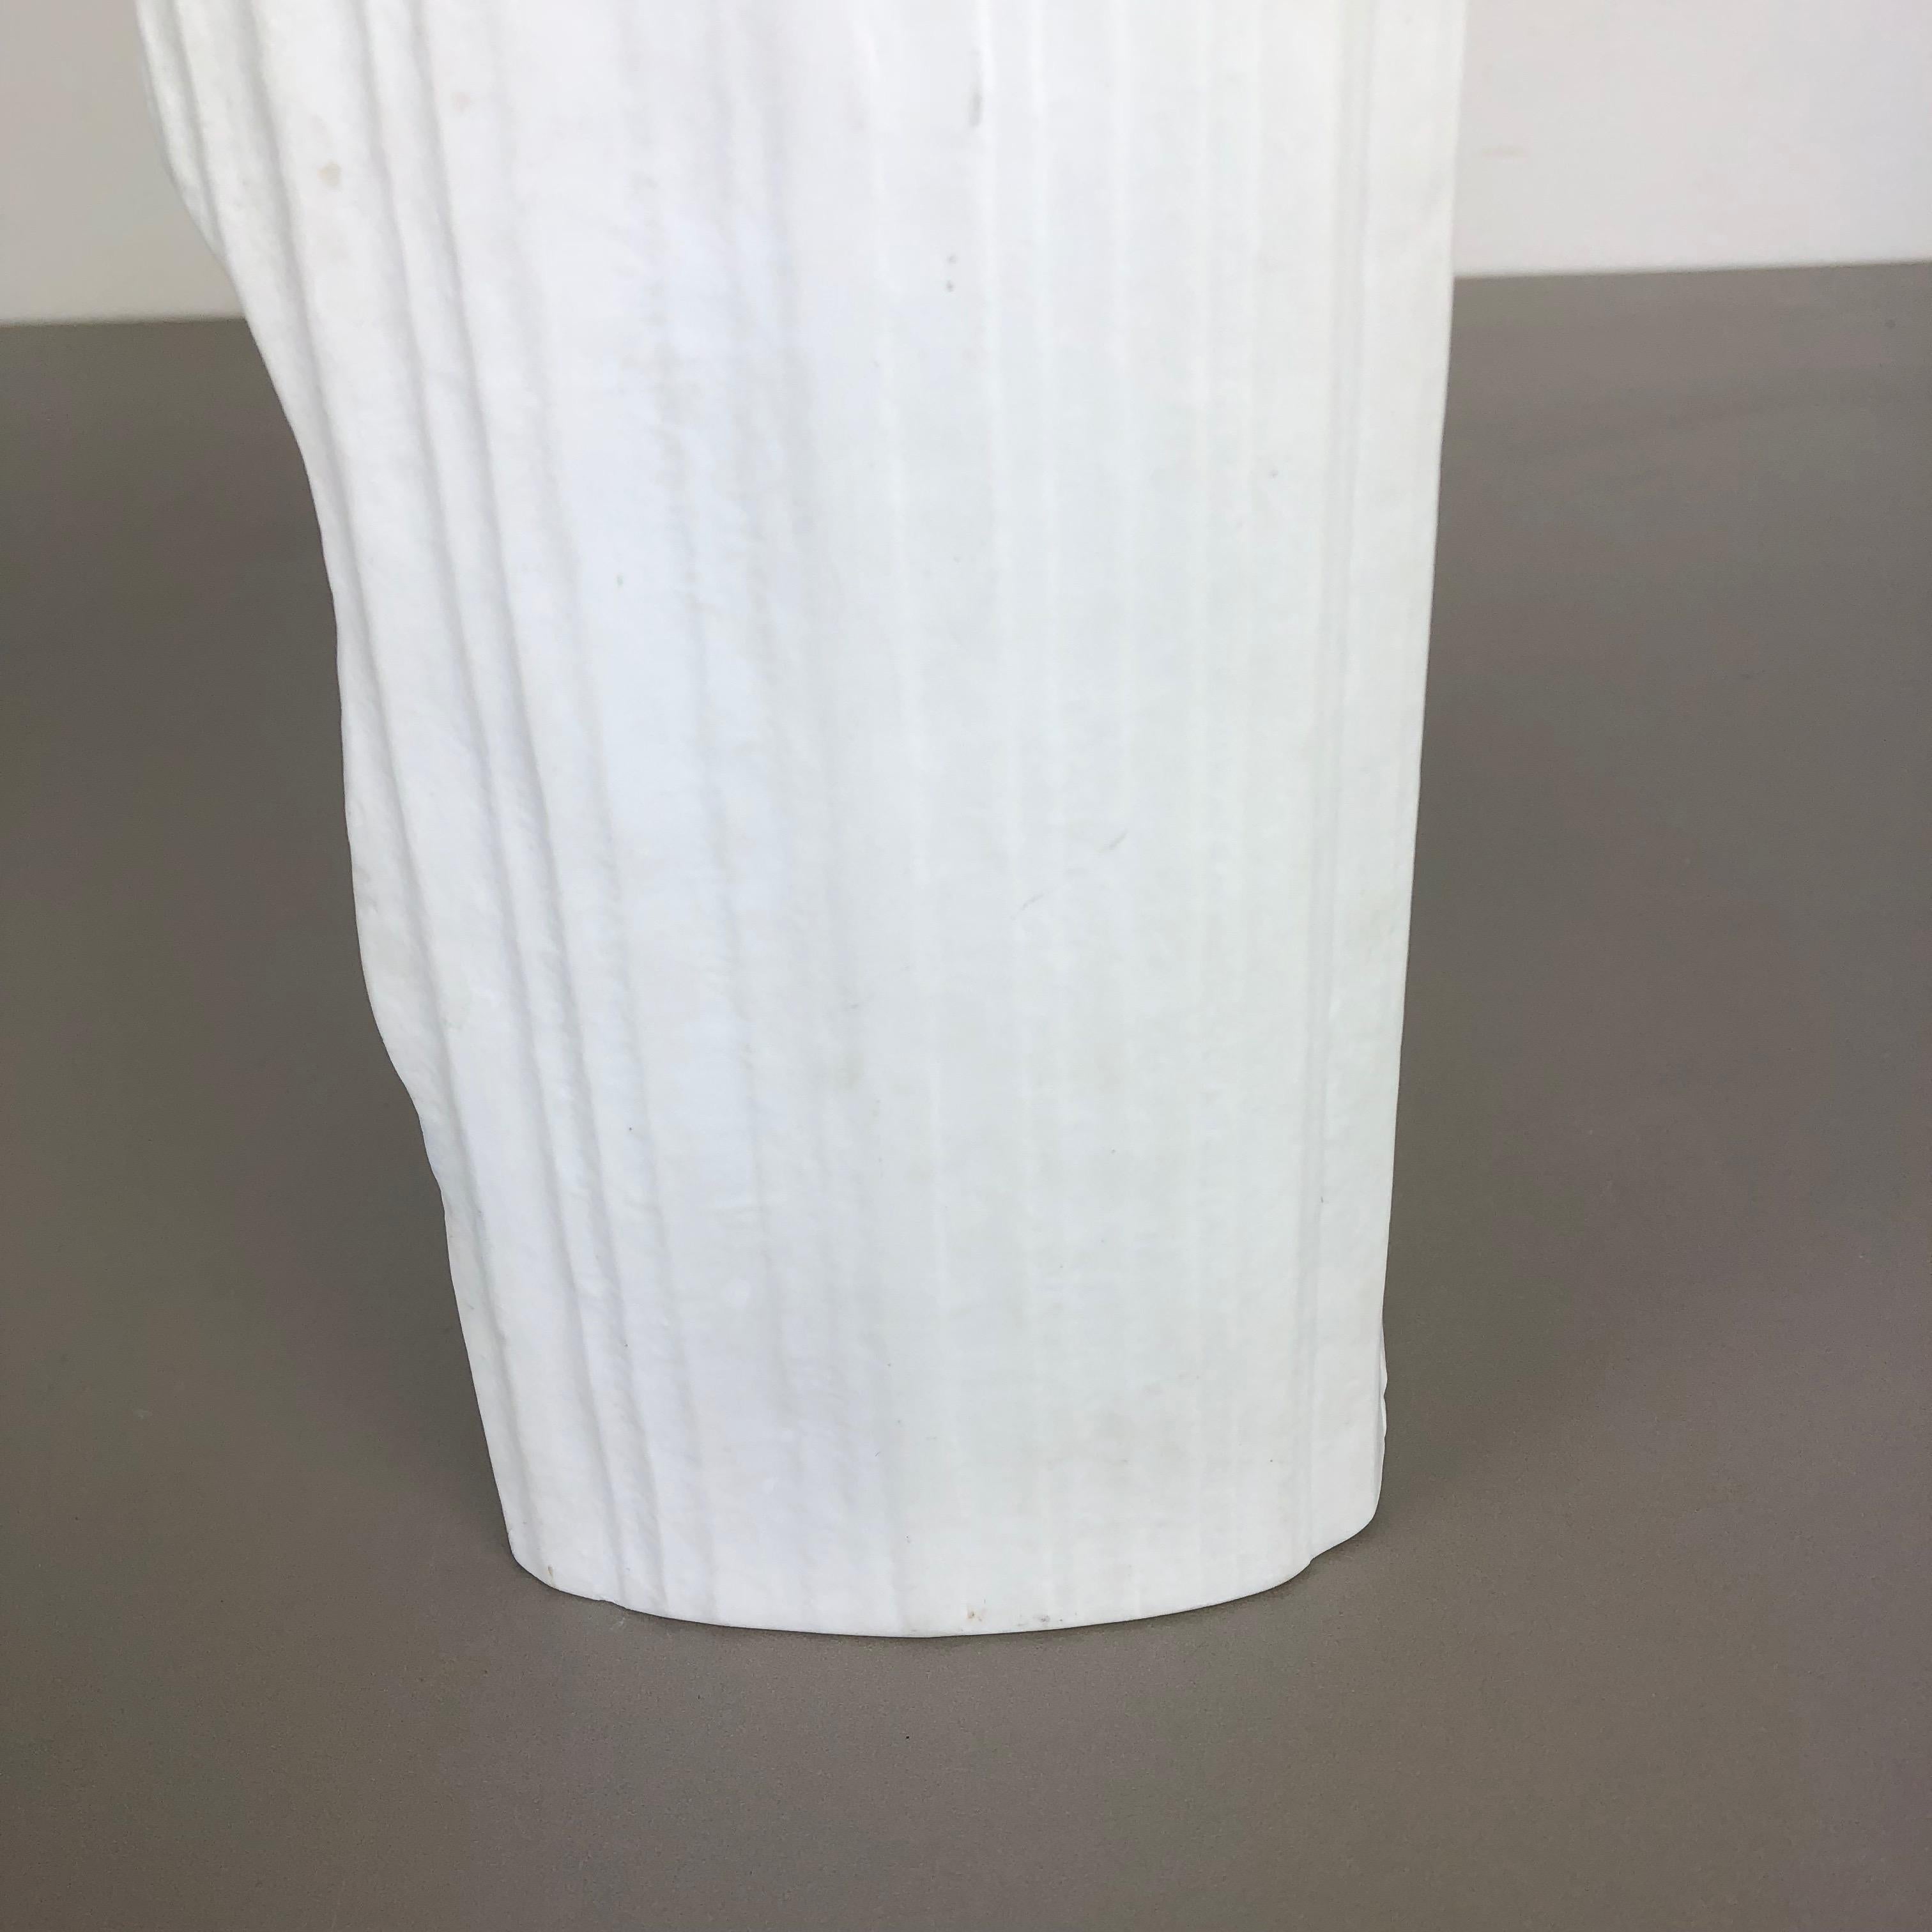 Large OP Art Vase Porcelain German Vase by Martin Freyer for Rosenthal 7